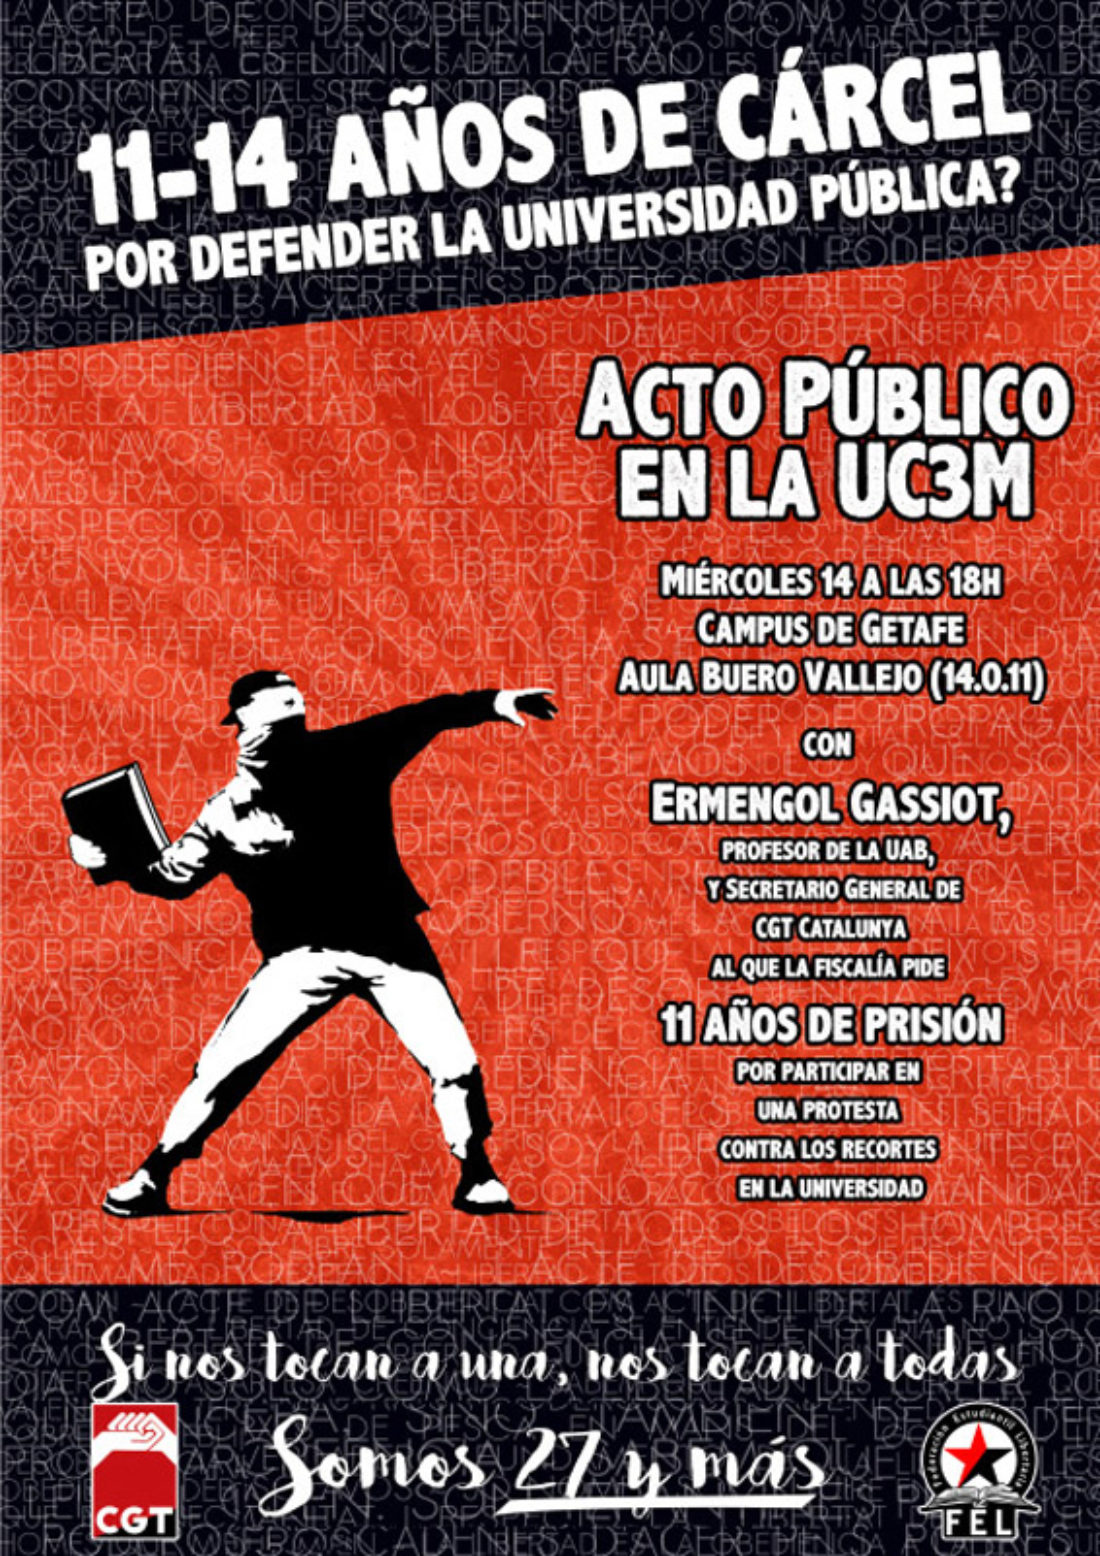 14-D: Acto público en la UC3M contra la represión al movimiento estudiantil